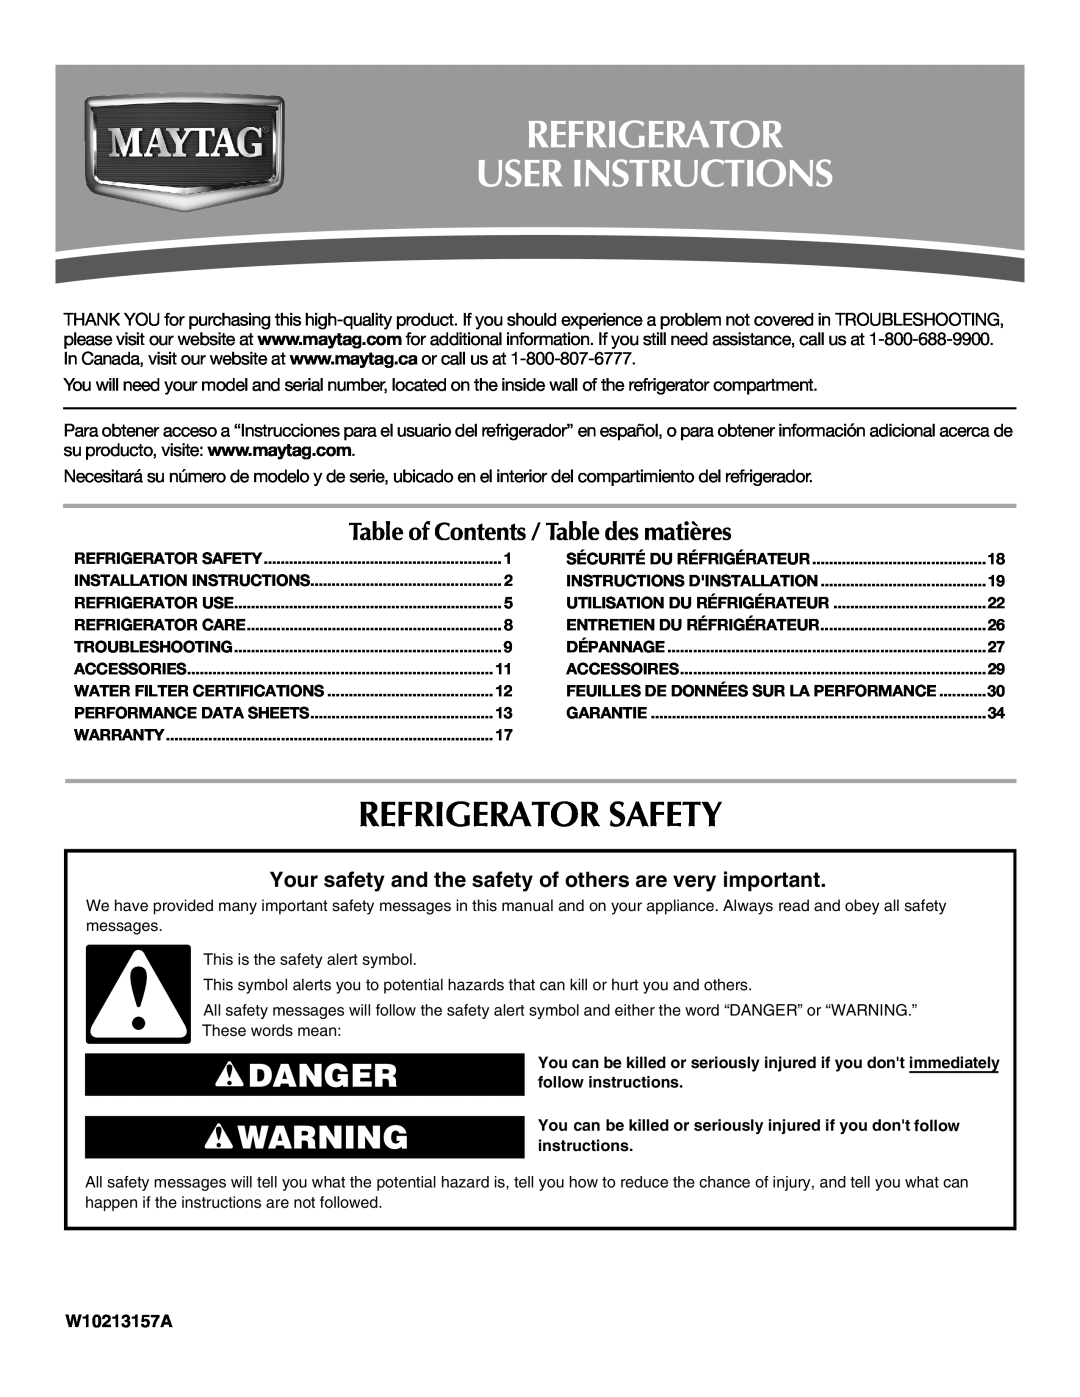 Maytag W10213157A, W10213158A installation instructions Refrigerator User Instructions, Refrigerator Safety, Danger 